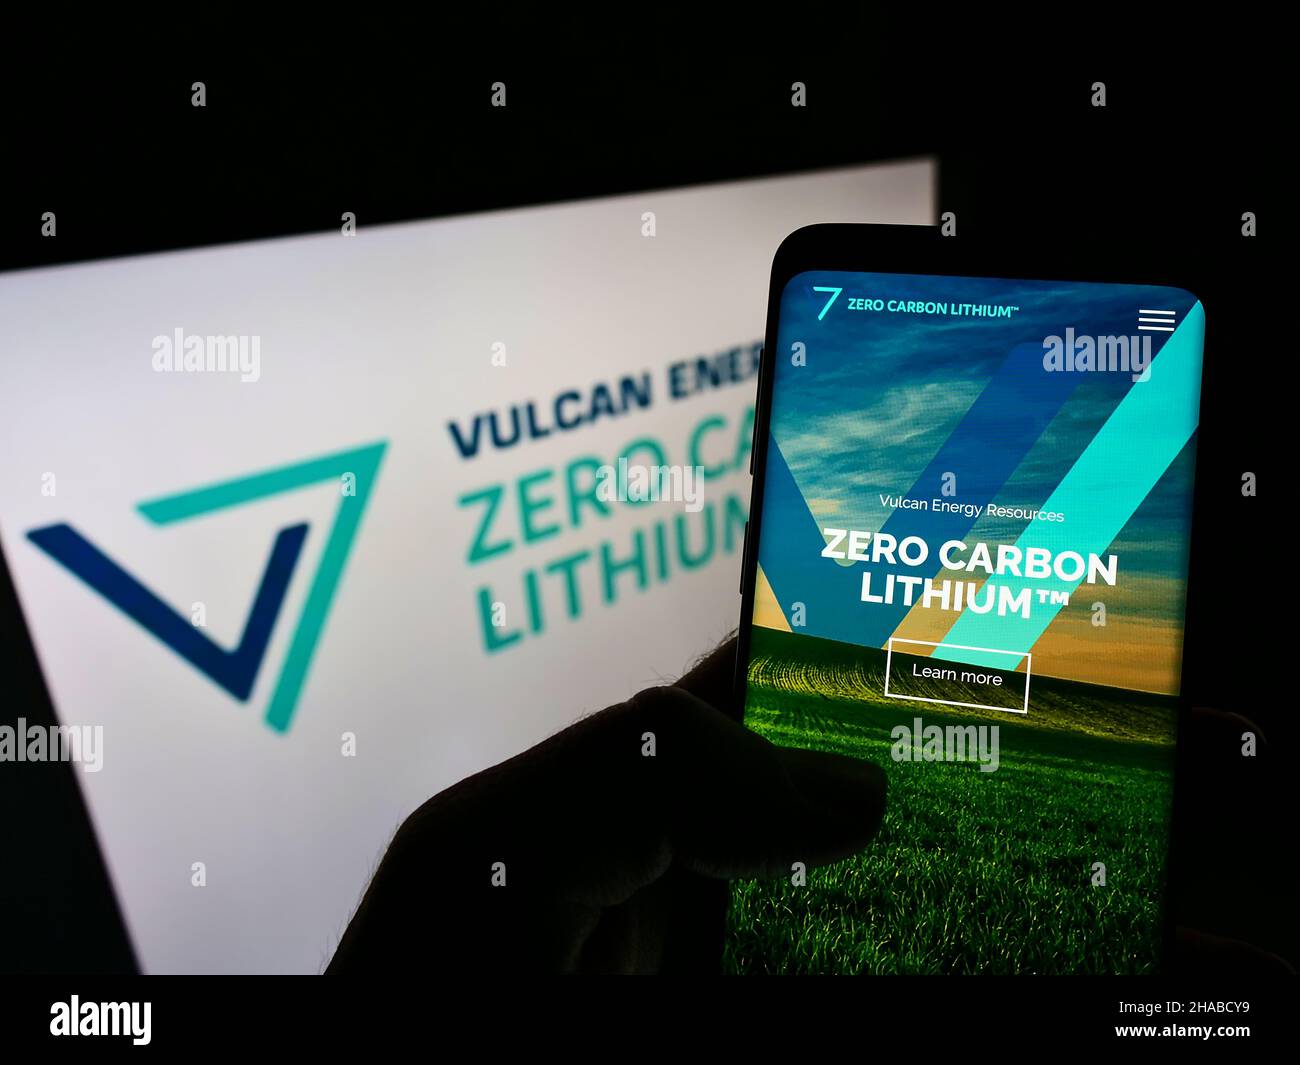 Persona che detiene il telefono cellulare con il sito web della società australiana Vulcan Energy Resources Ltd sullo schermo con il logo. Concentrarsi sul centro del display del telefono. Foto Stock